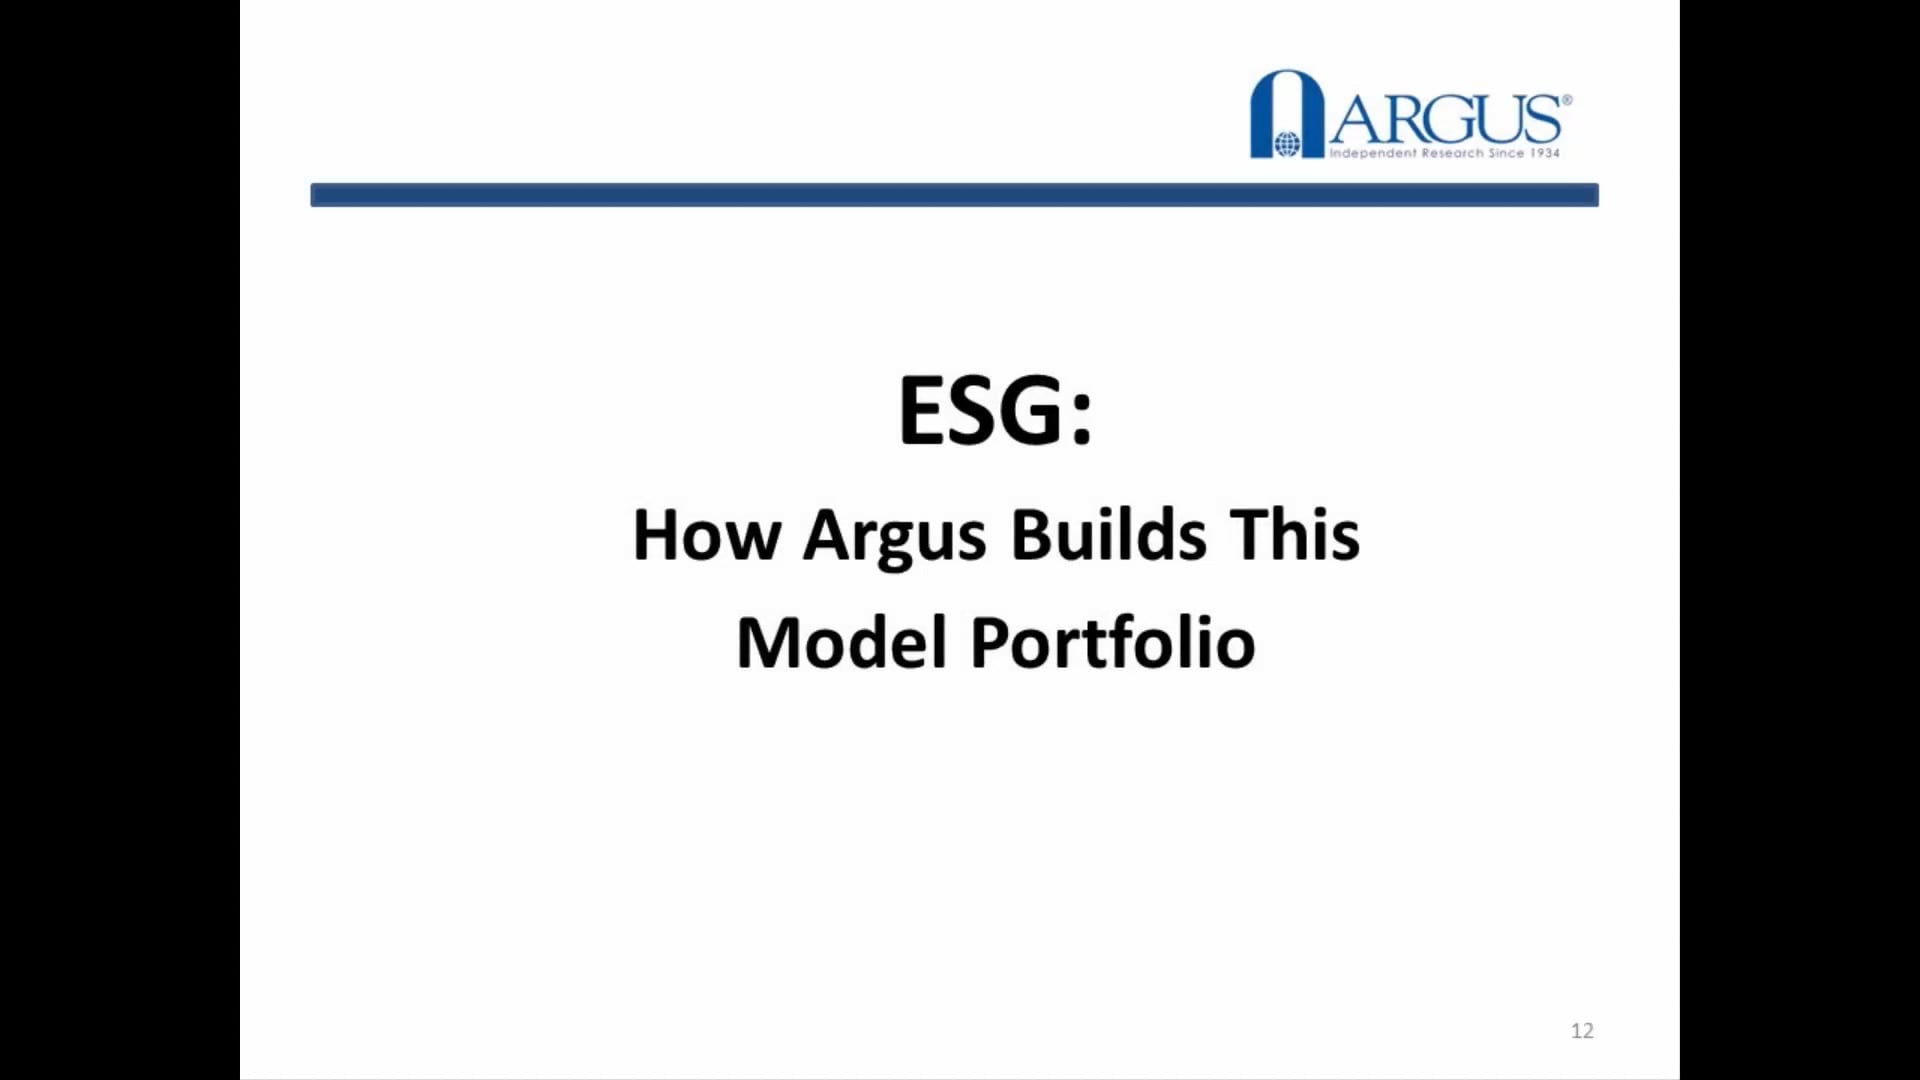 How Argus Builds an ESG Model Portfolio